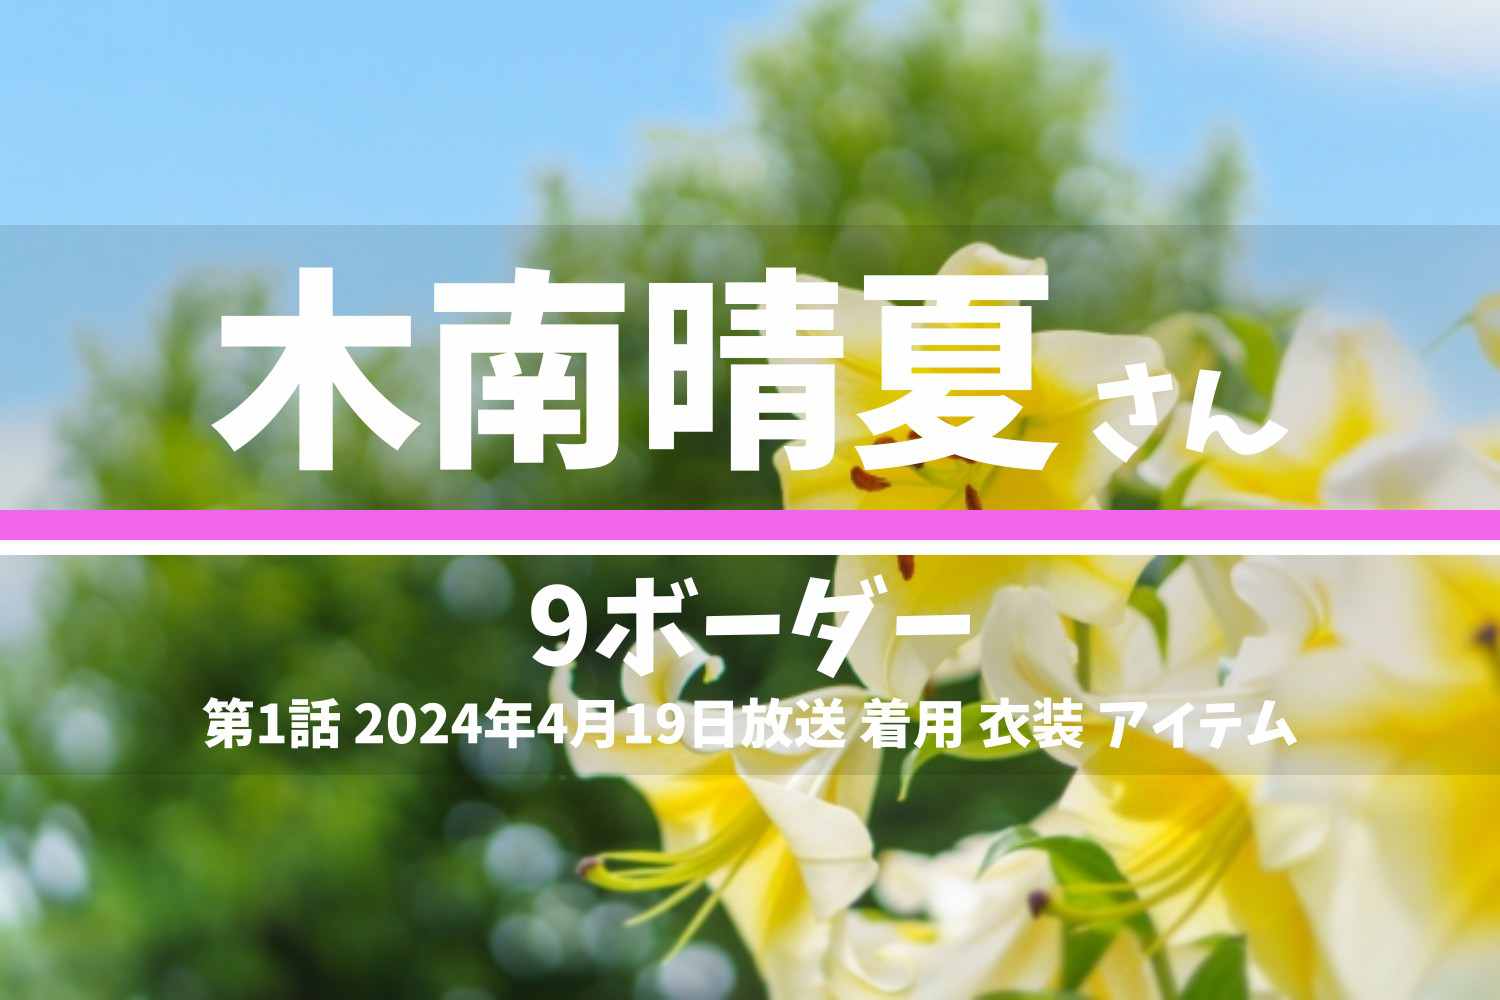 9ボーダー 木南晴夏さん テレビドラマ 衣装 2024年4月19日放送